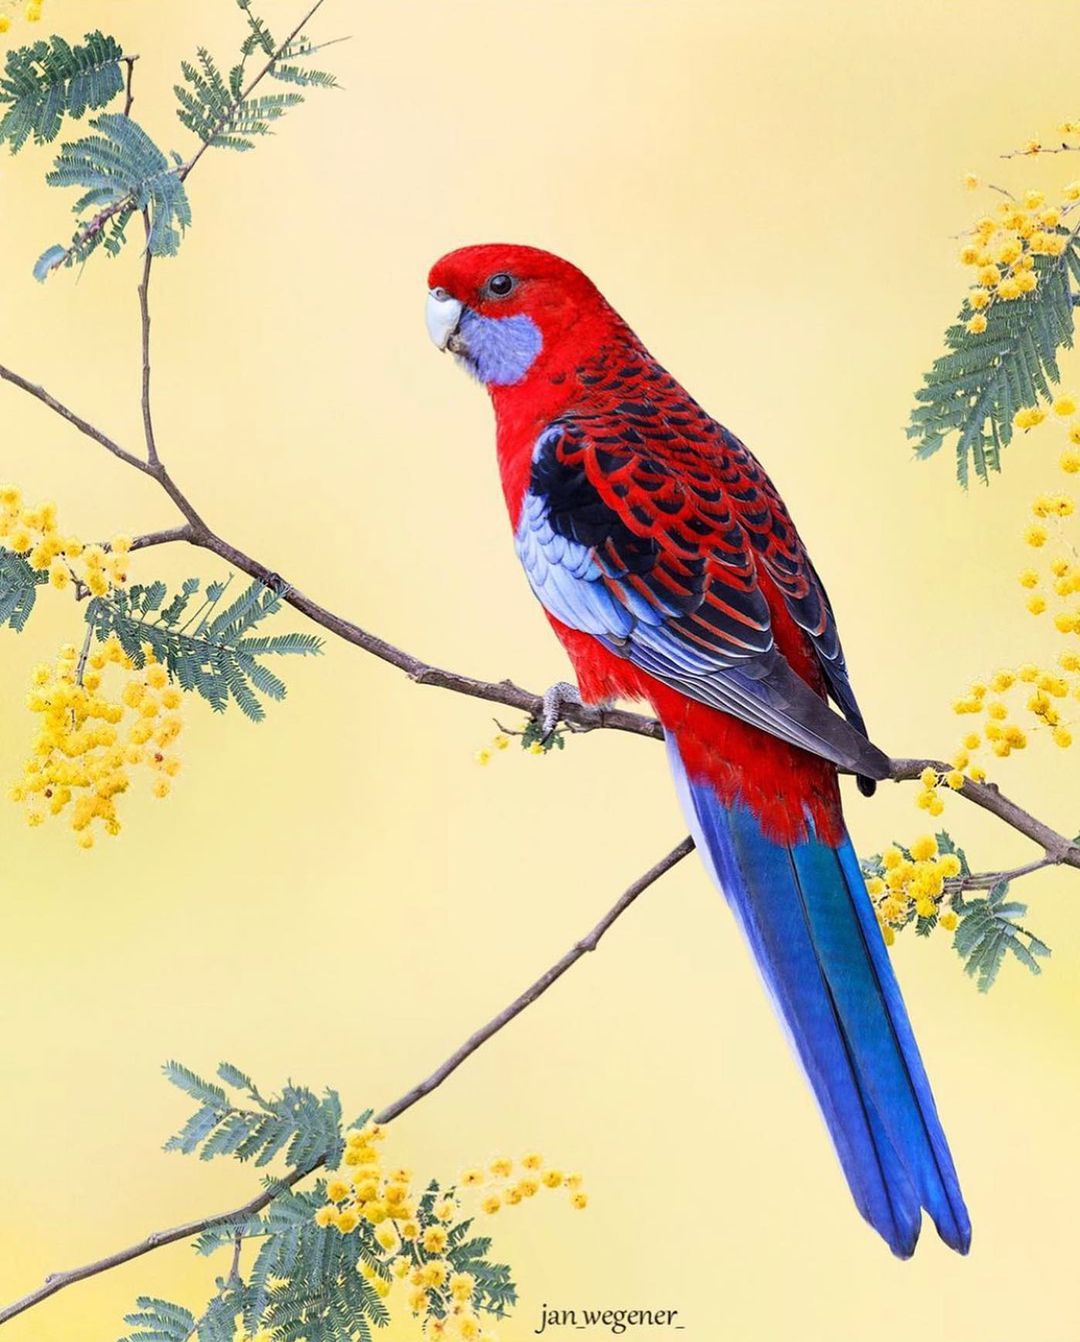 Красота разных птиц на снимках Яна Вегенера